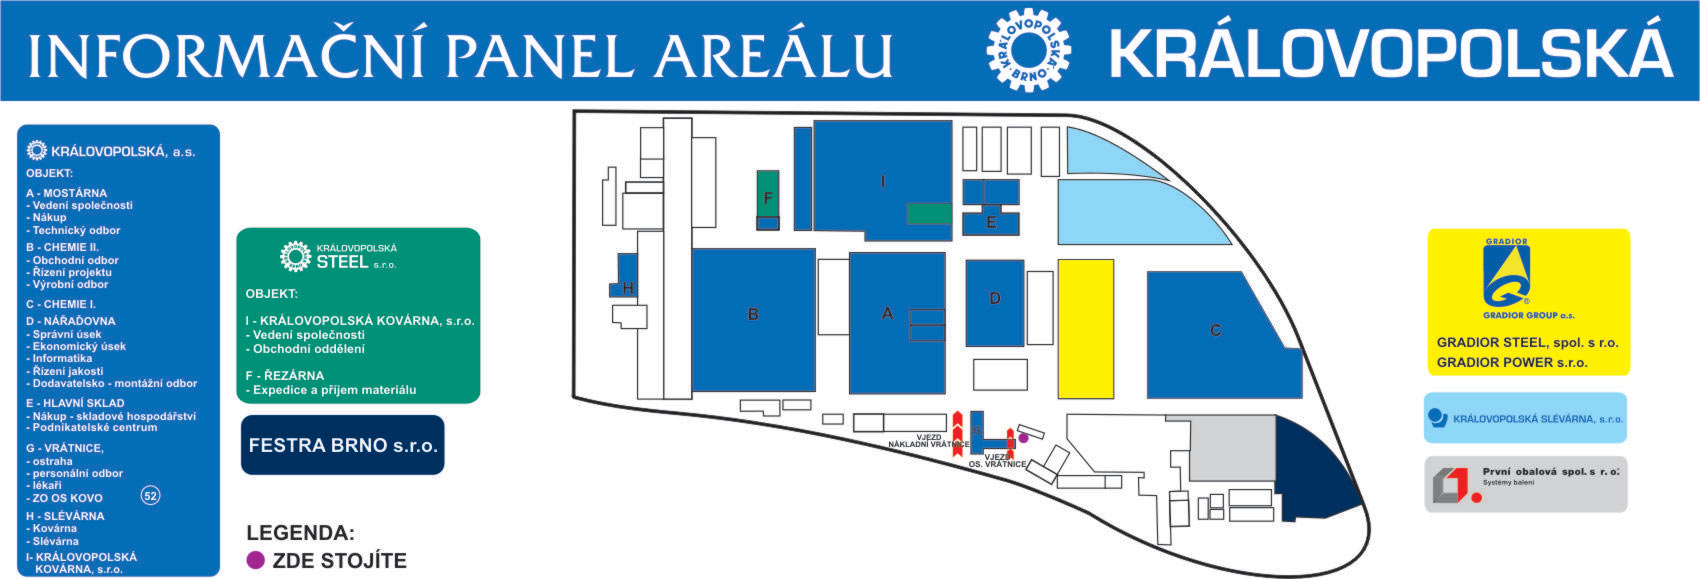 Mapa areálu - Královopolská Steel - Nástrojová ocel, prodej oceli